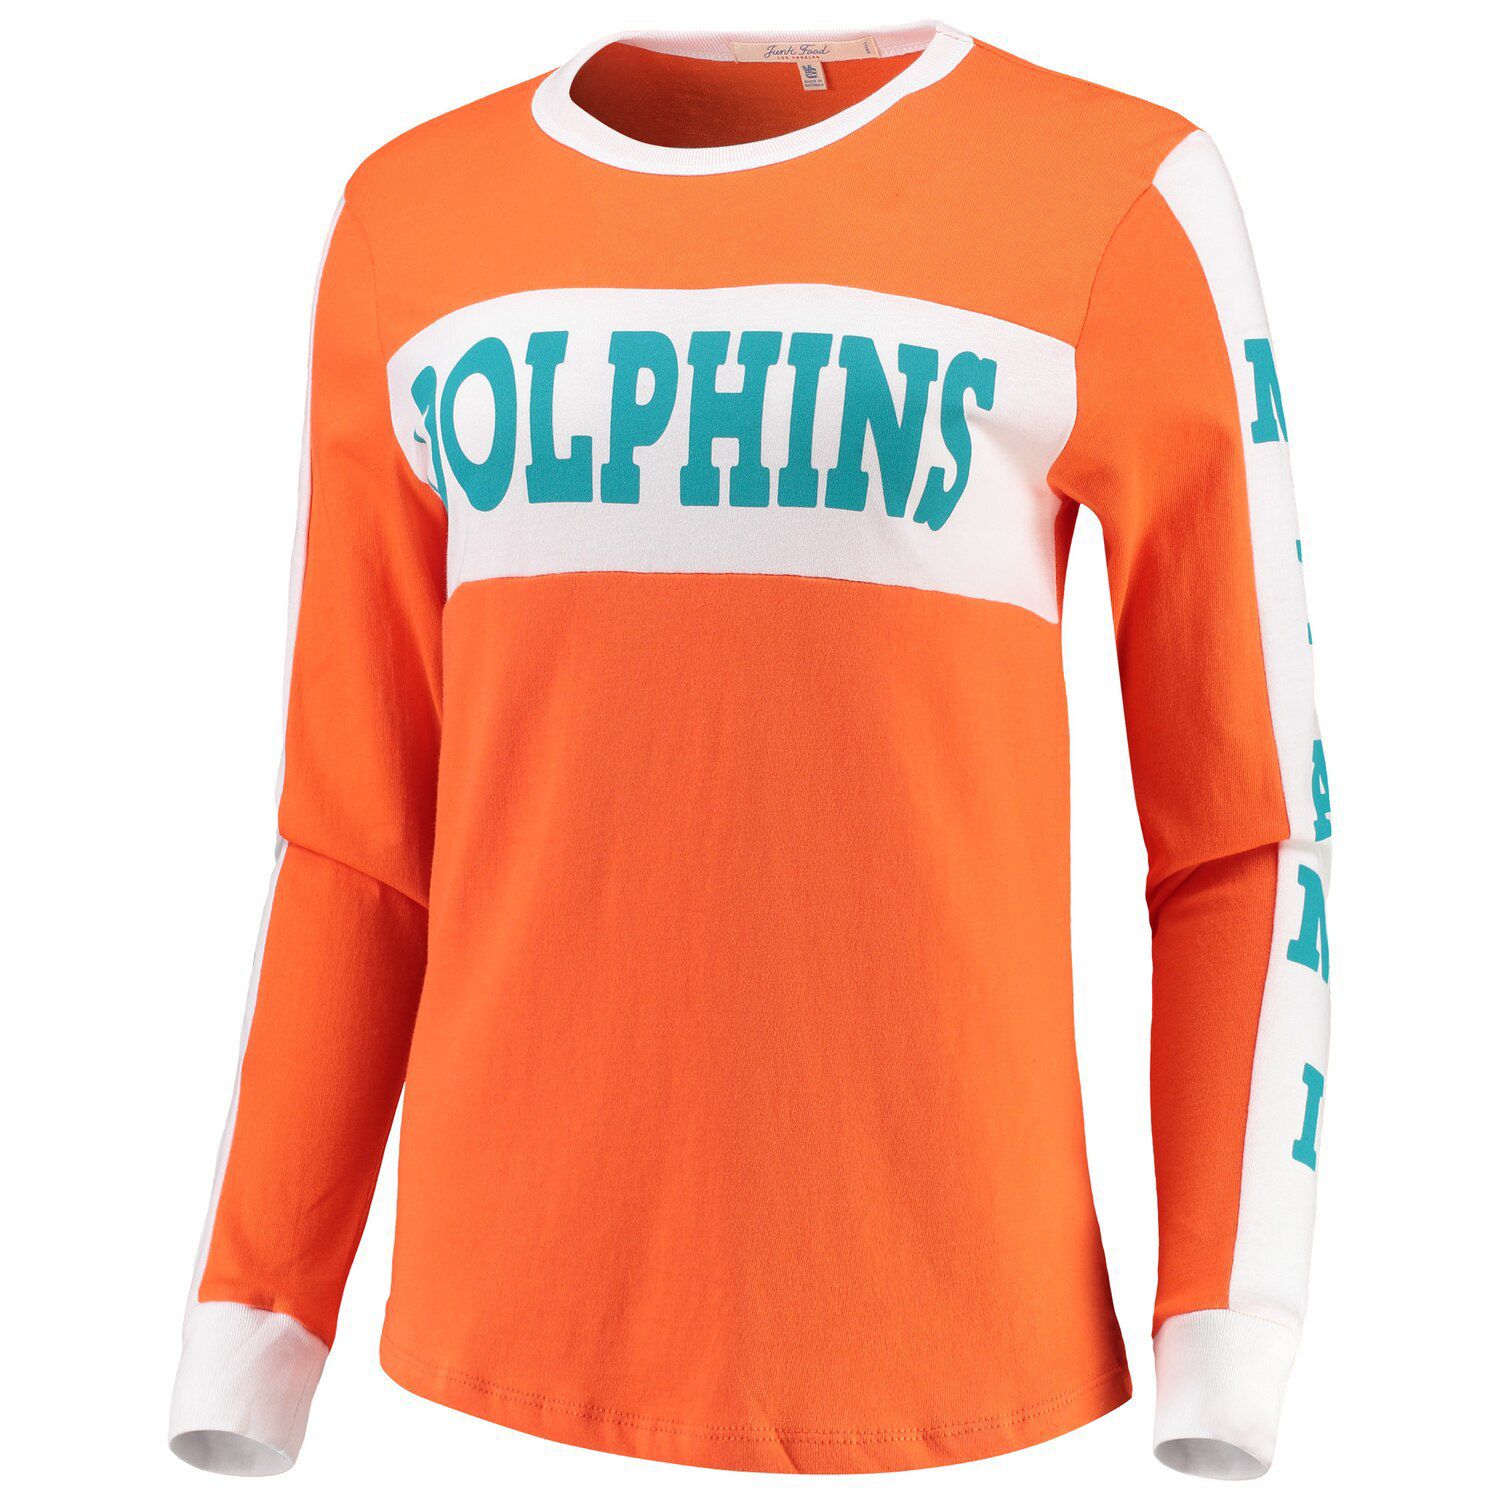 miami dolphins orange t shirt